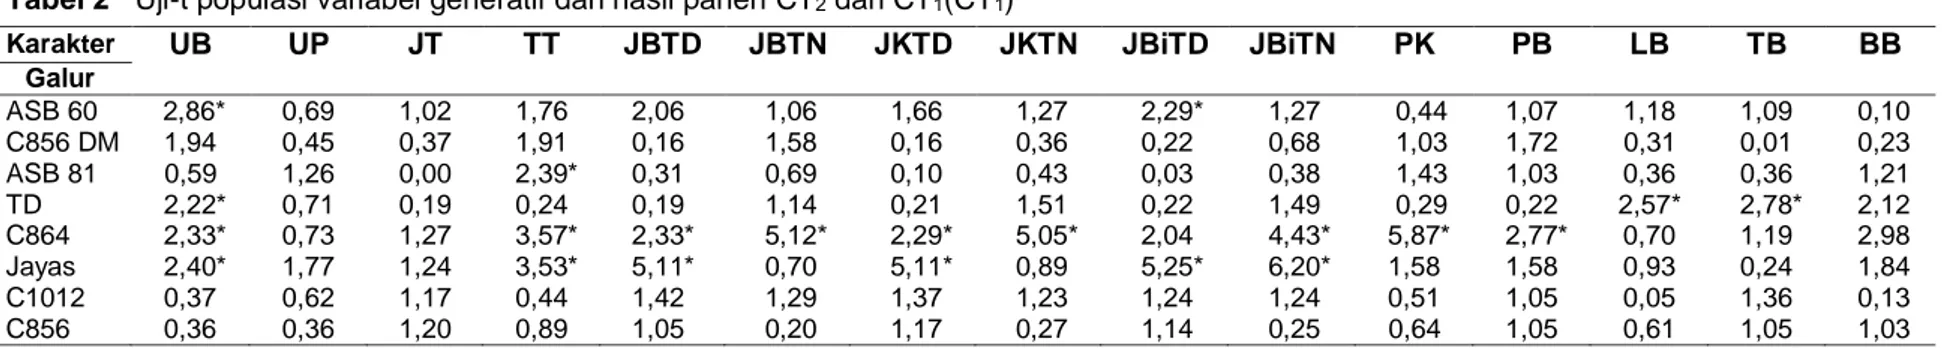 Tabel 2   Uji-t populasi variabel generatif dan hasil panen CT 2  dan CT 1 (CT 1 ) 